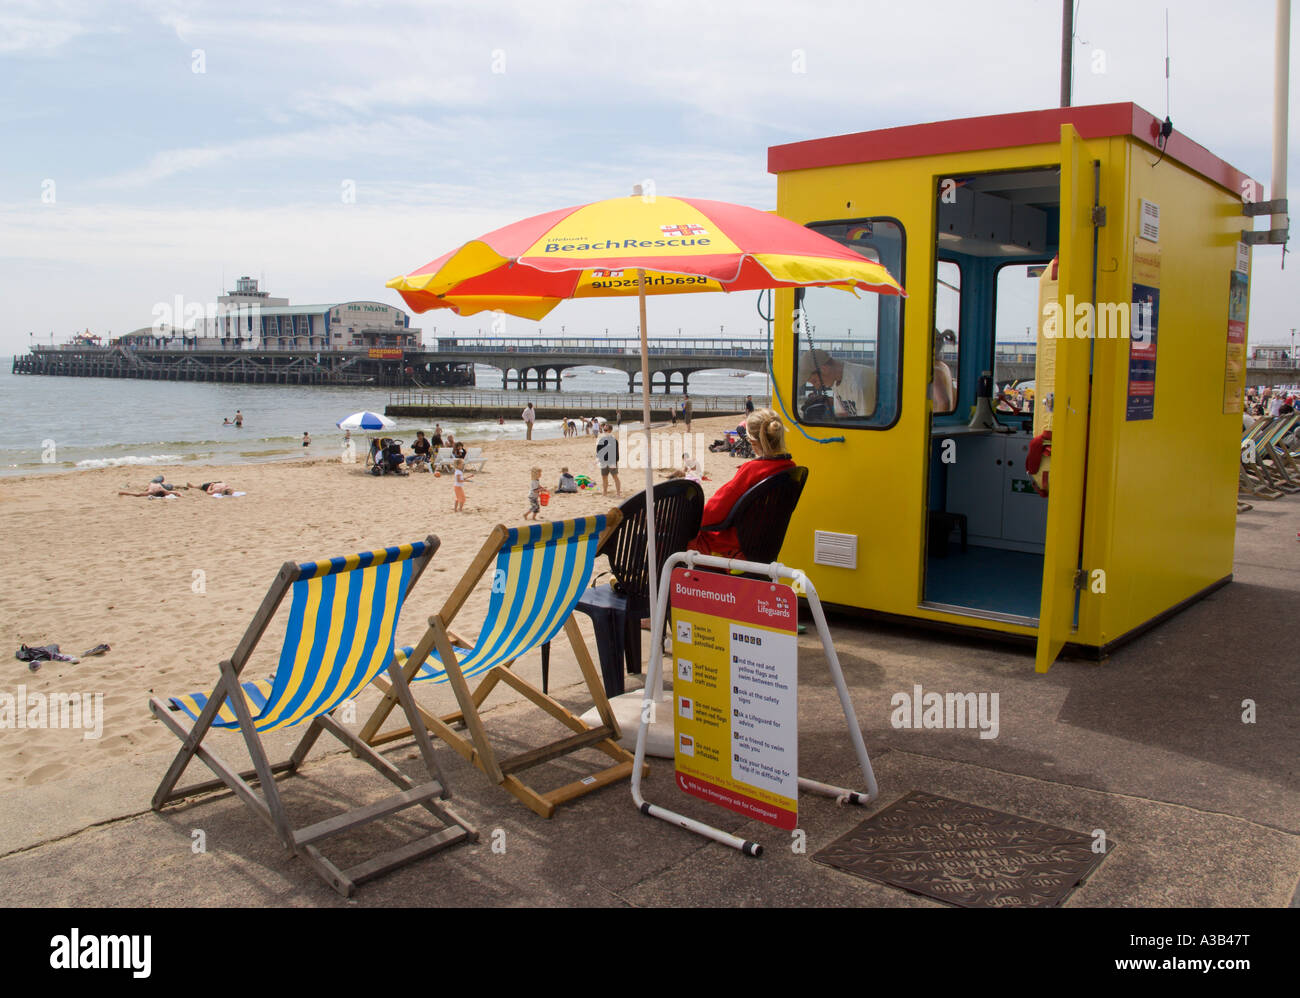 La plage de l'Est de Bournemouth Dorset ANGLETERRE Touristes bronzer sur le sable de la station balnéaire de pier avec lifeguard station et transat. Banque D'Images